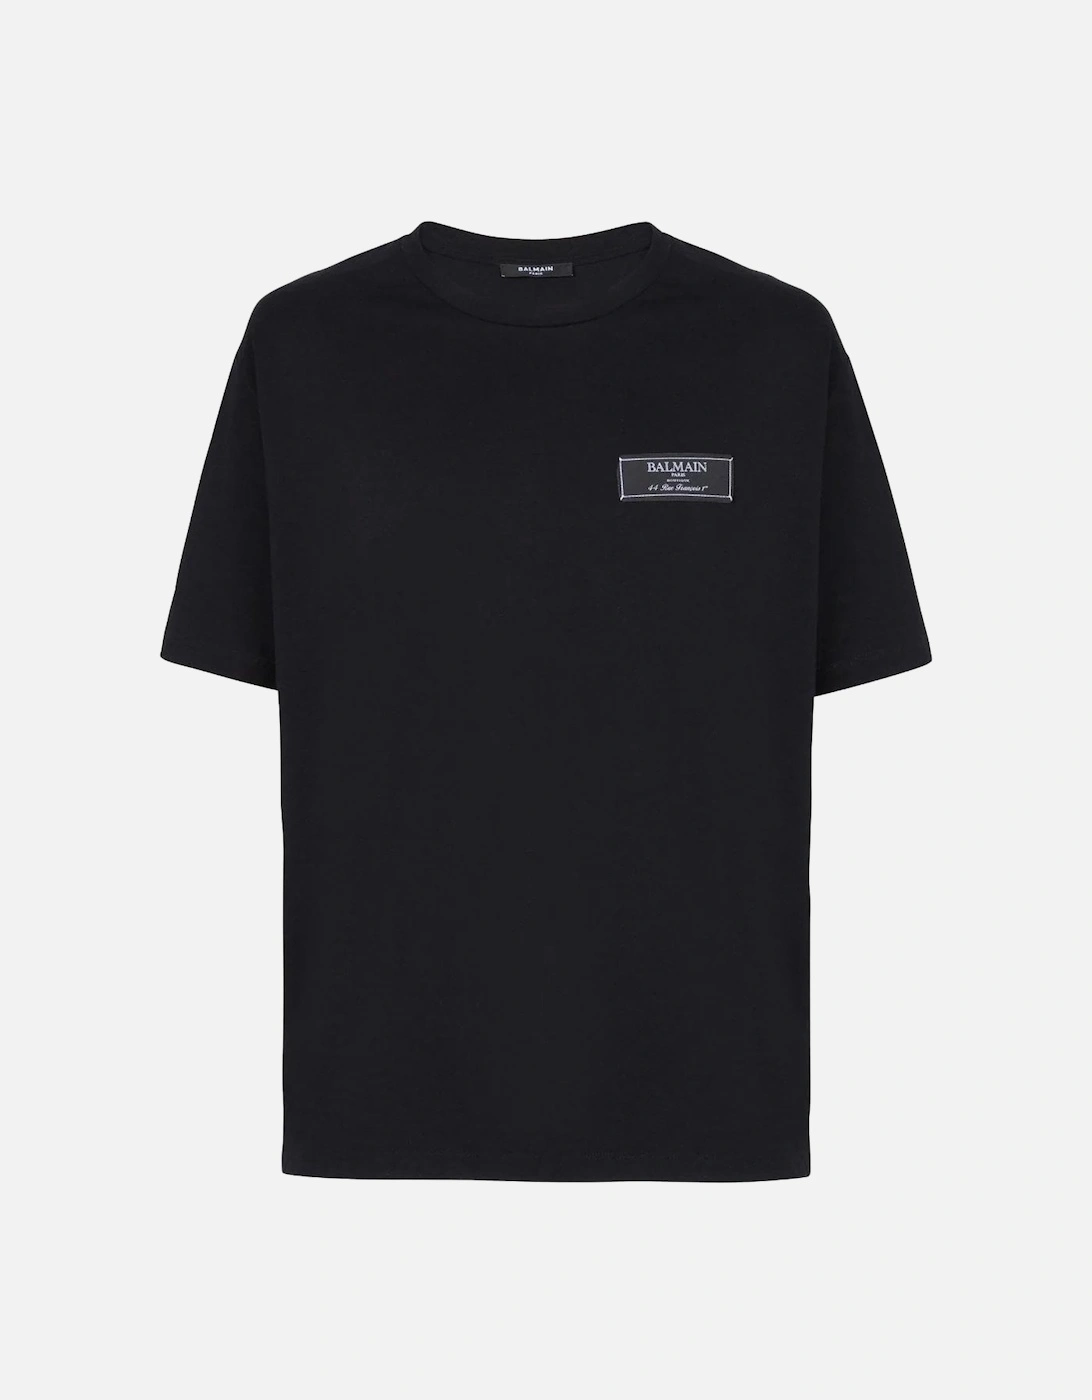 Paris Label T-shirt Straight Fit Black, 8 of 7